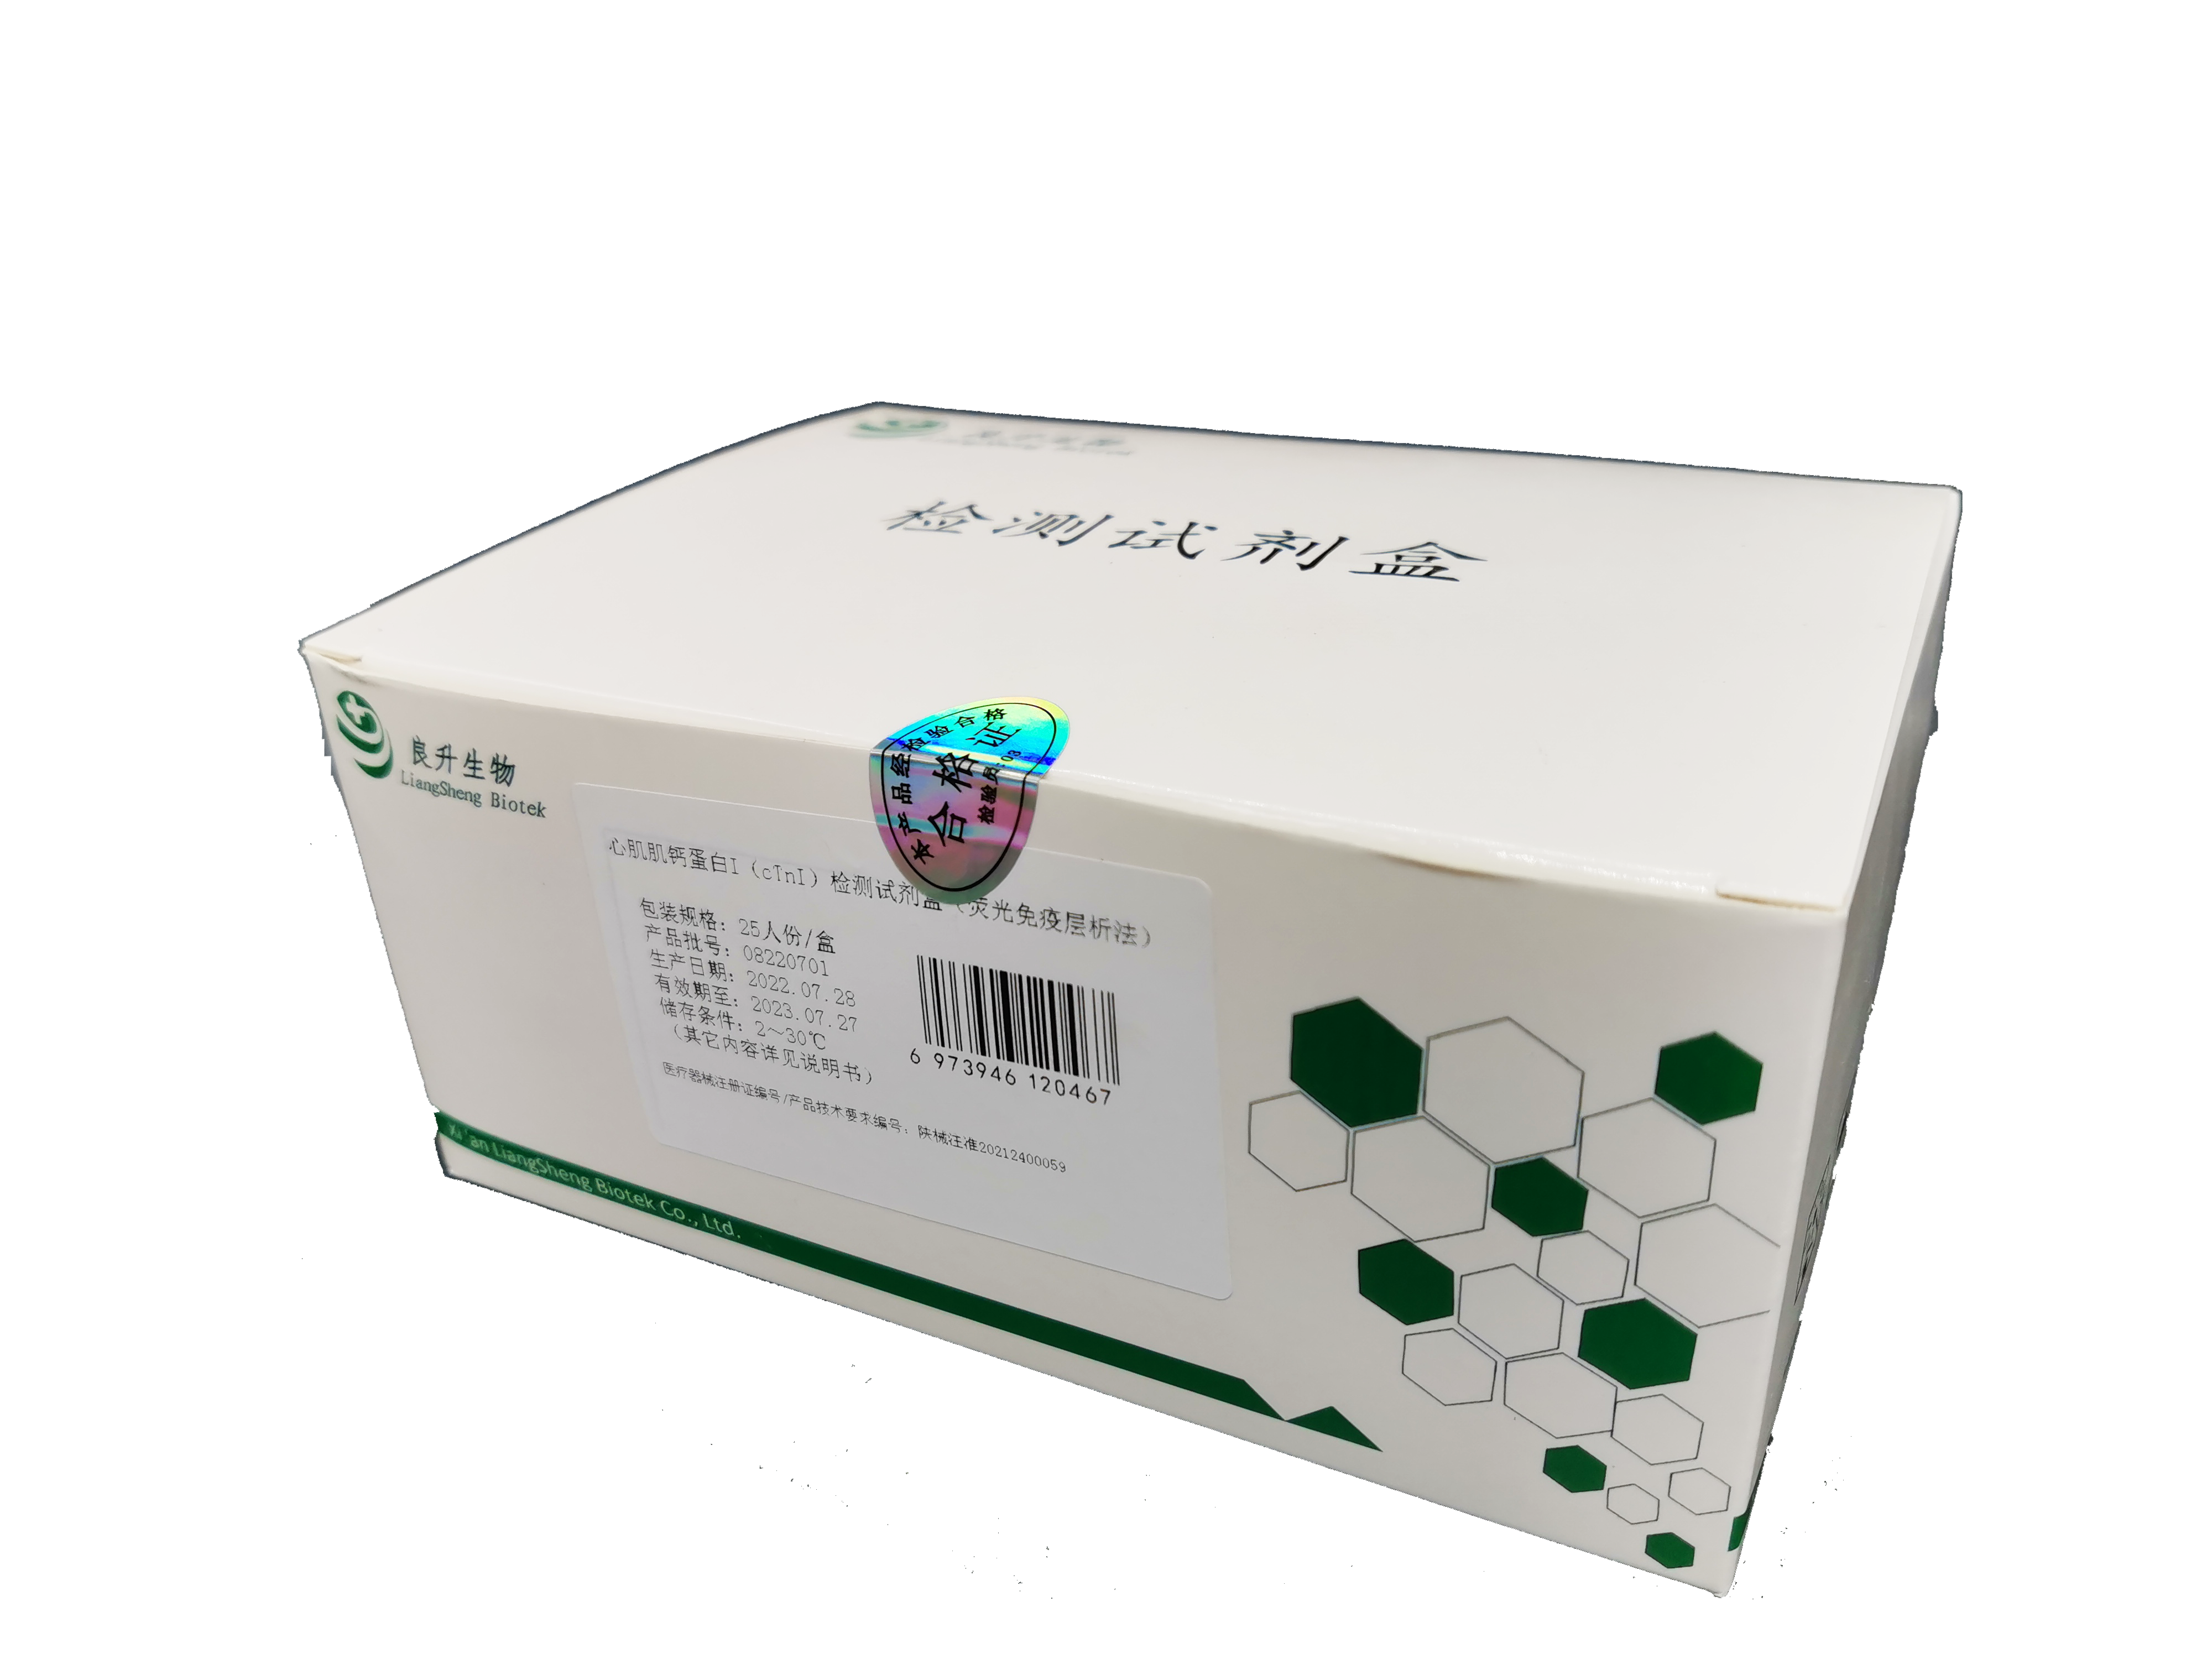 心肌肌钙蛋白I（cTnI）检测试剂盒(荧光免疫层析法)